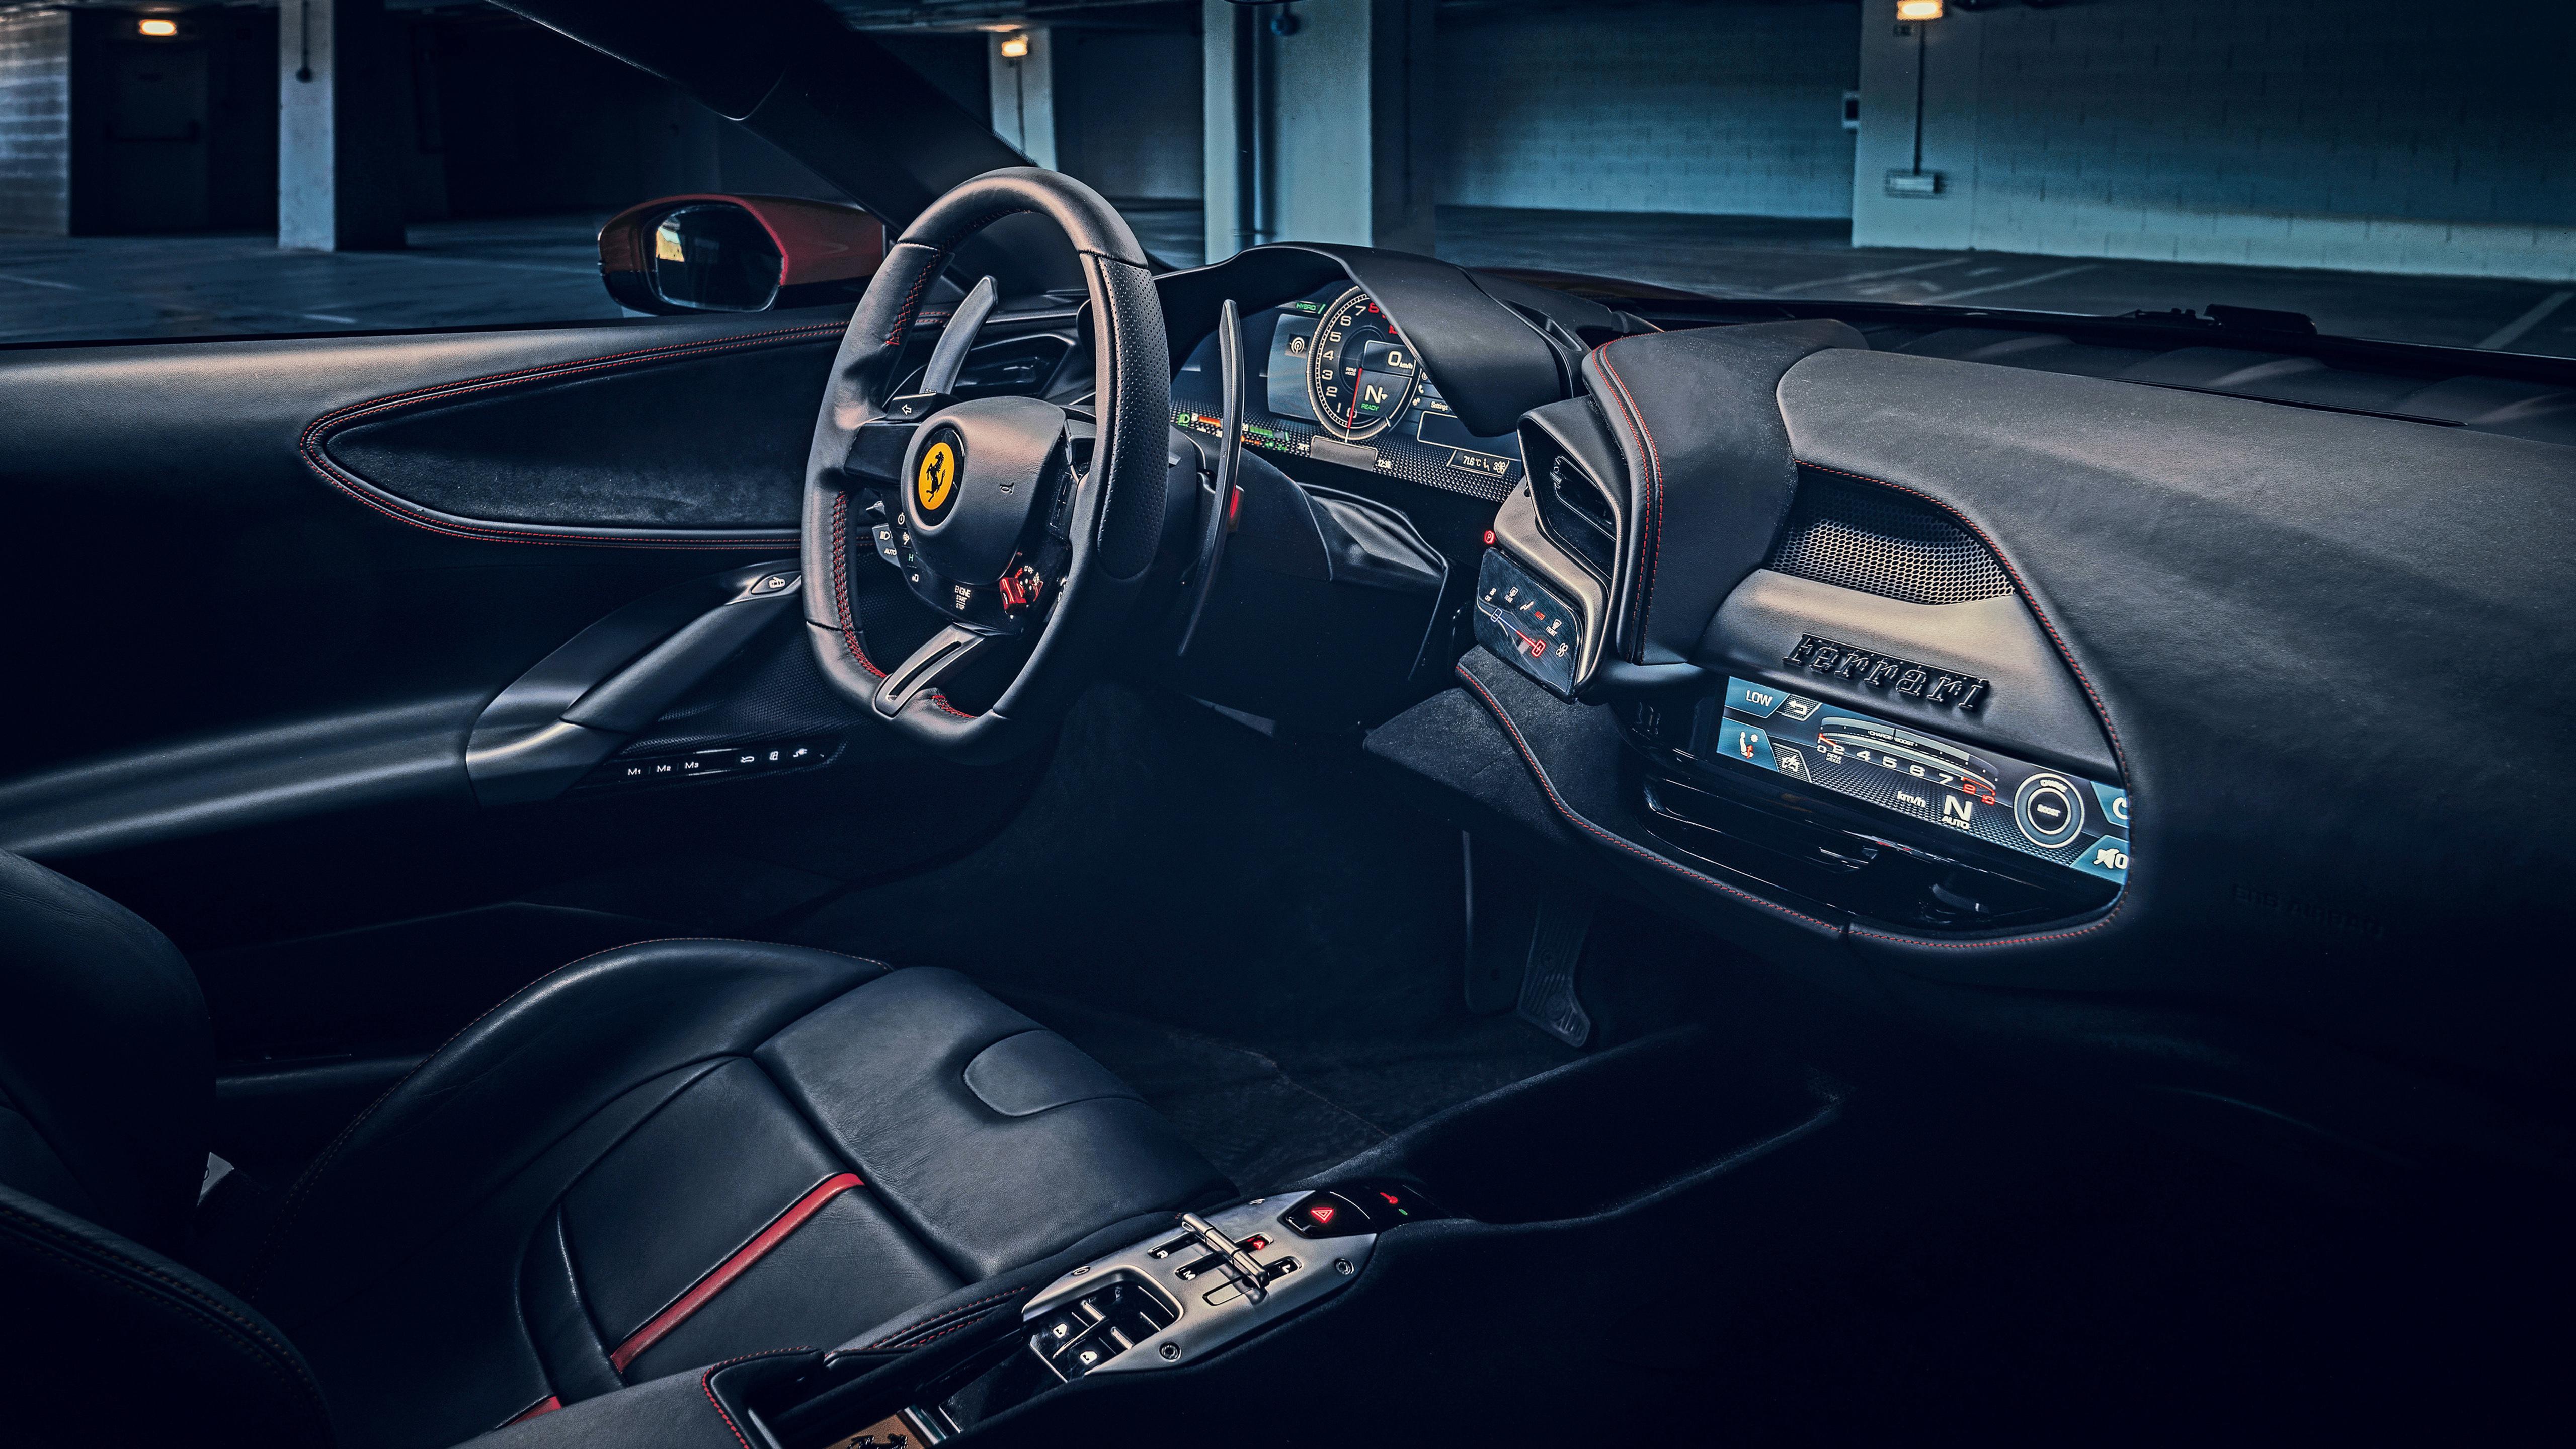 Ferrari SF90 Stradale 2019 4K Interior Wallpaper. HD Car Wallpaper